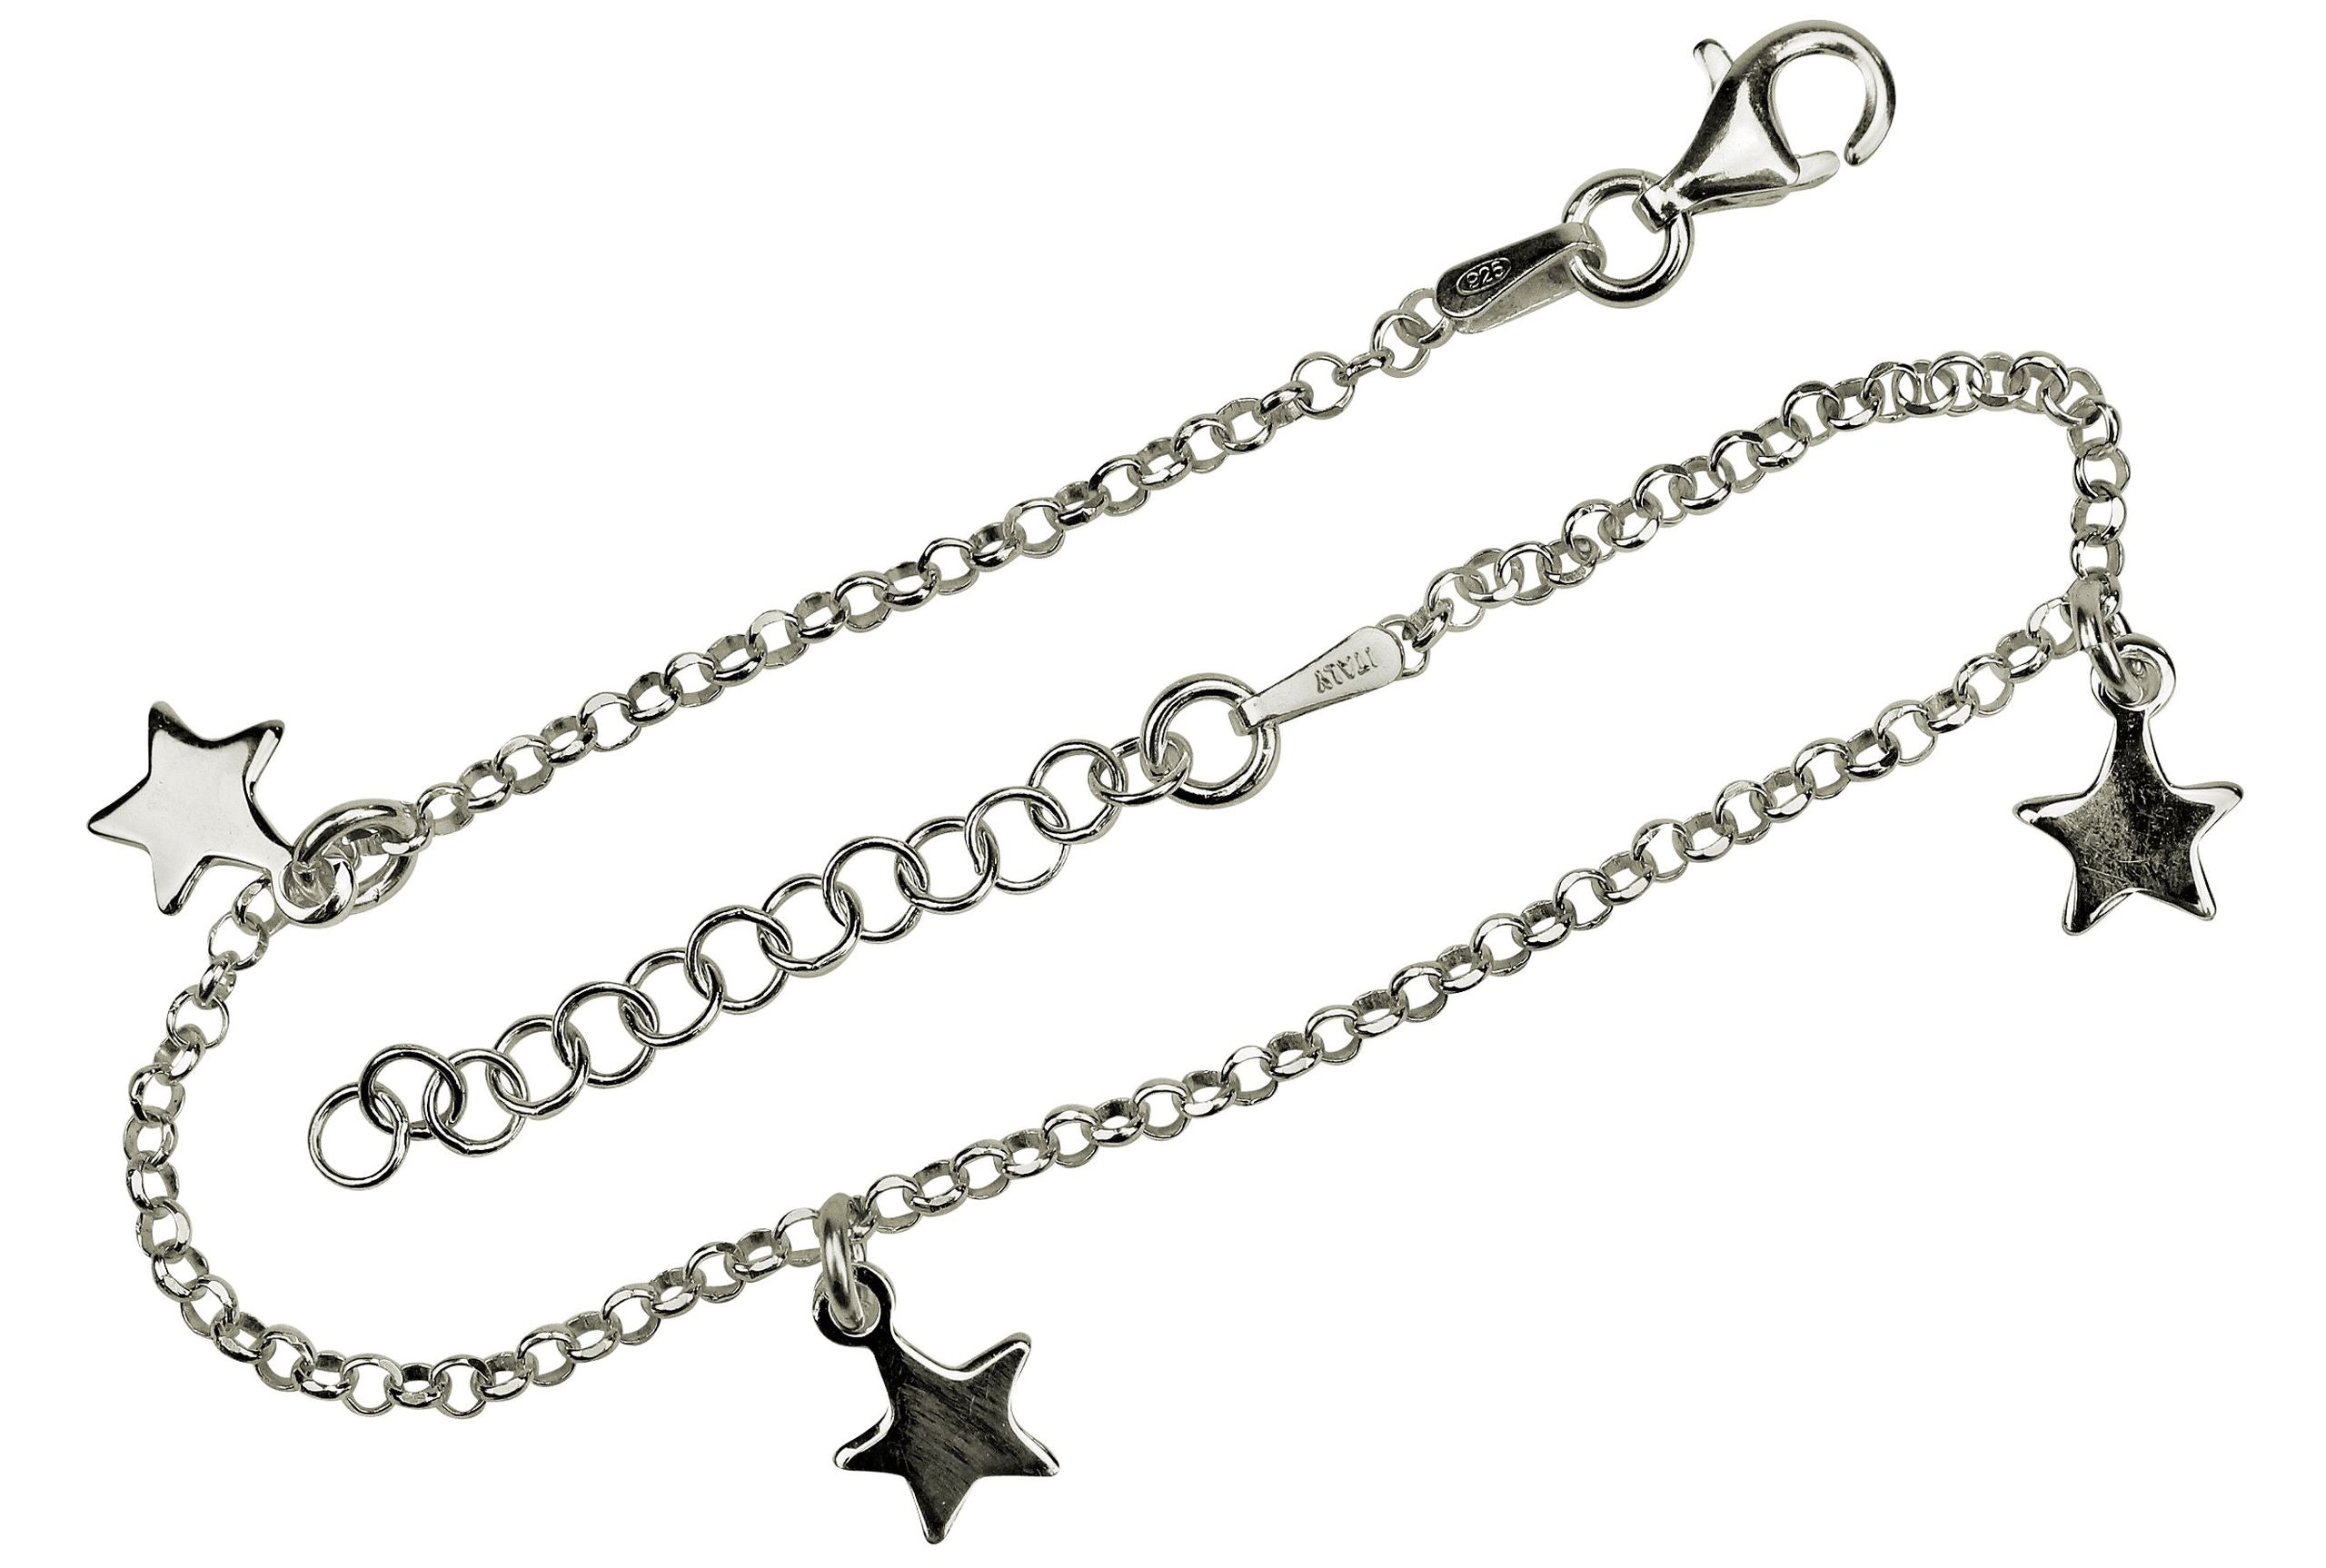 Ein Amband aus Silber aus einer feinen Kette und drei Sternen als Anhänger.